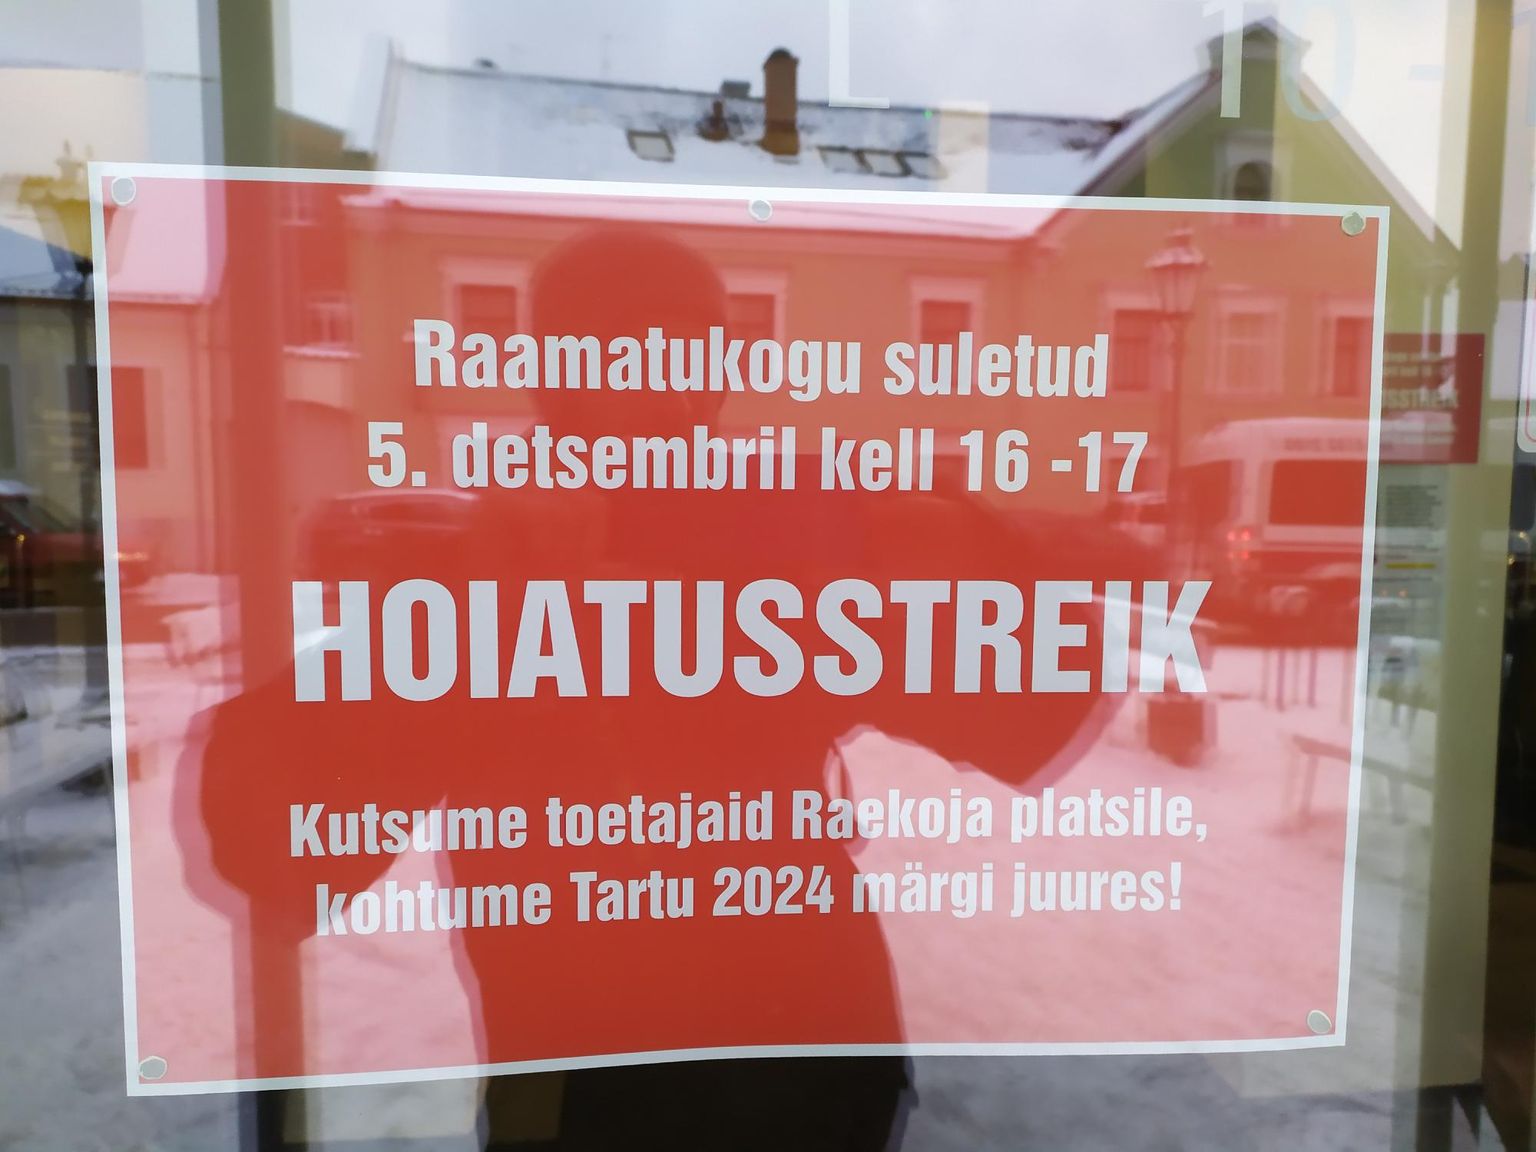 Tartu linnaraamatukogu uksel seisab silt, mis annab teada, et 5.detsembril toimub hoiatusstreik ja sellel ajal ton raamatukogu suletud.